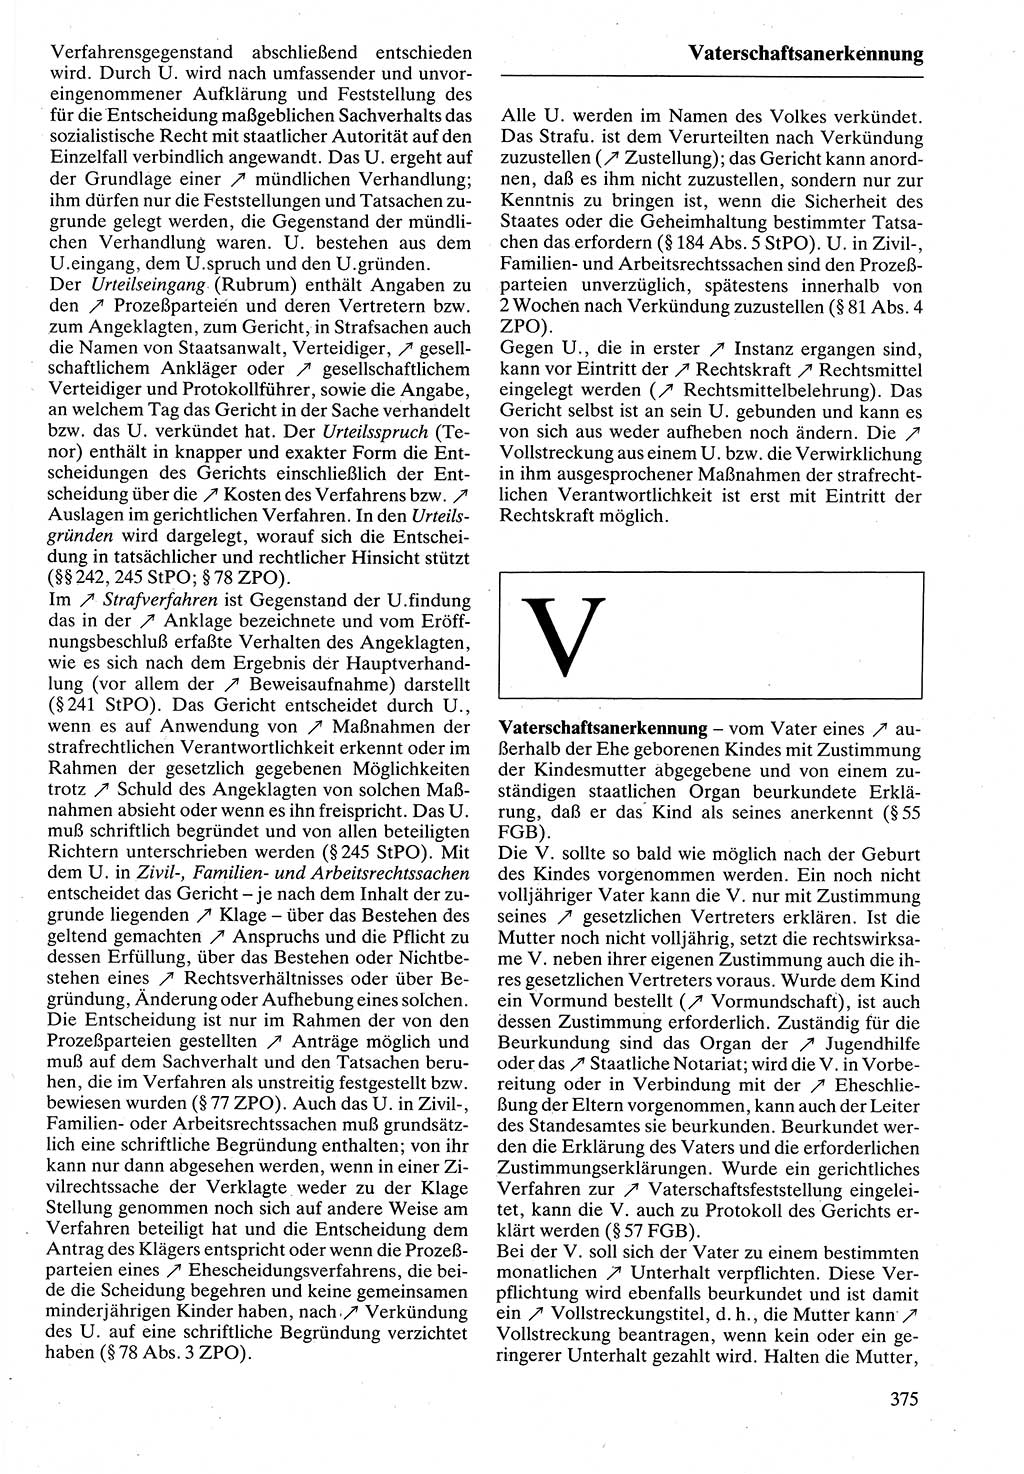 Rechtslexikon [Deutsche Demokratische Republik (DDR)] 1988, Seite 375 (Rechtslex. DDR 1988, S. 375)